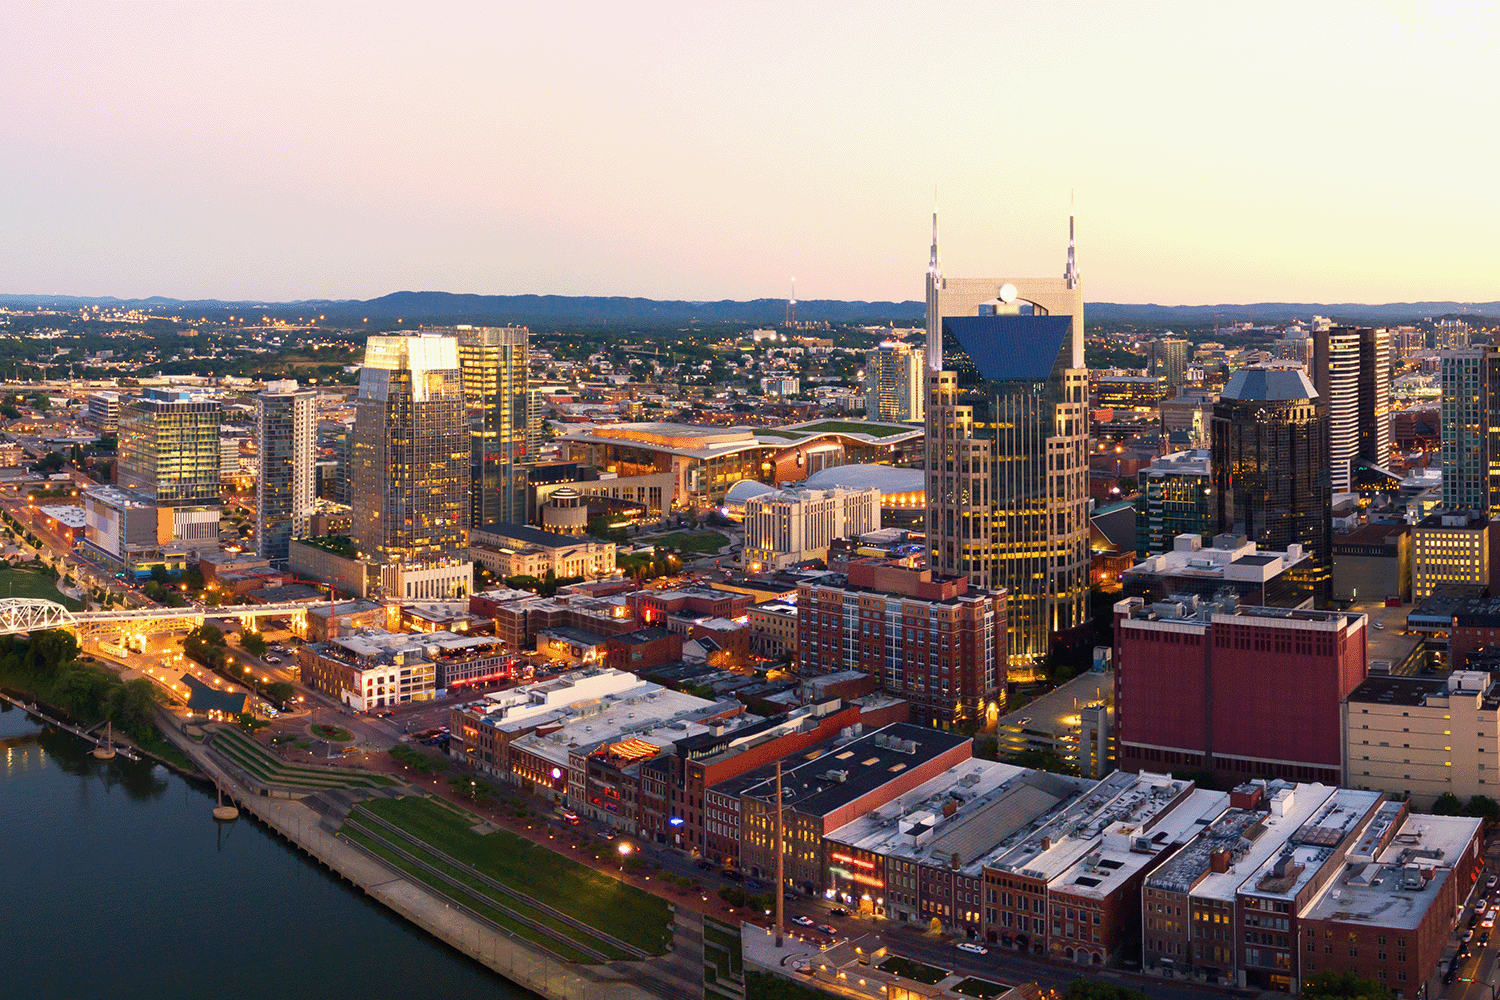 Aerial view of Nashville skyline